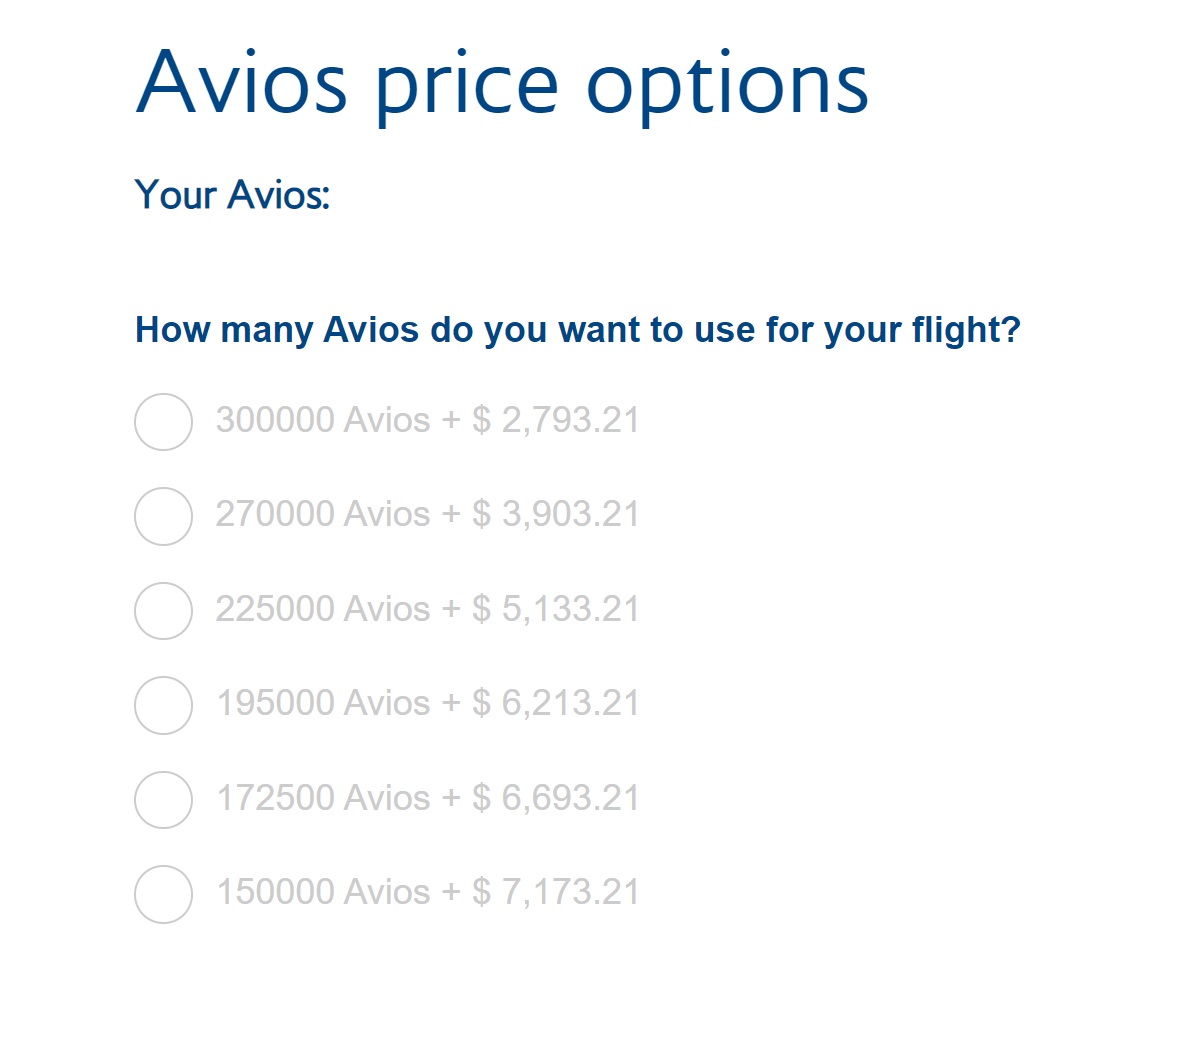 a screenshot of a survey